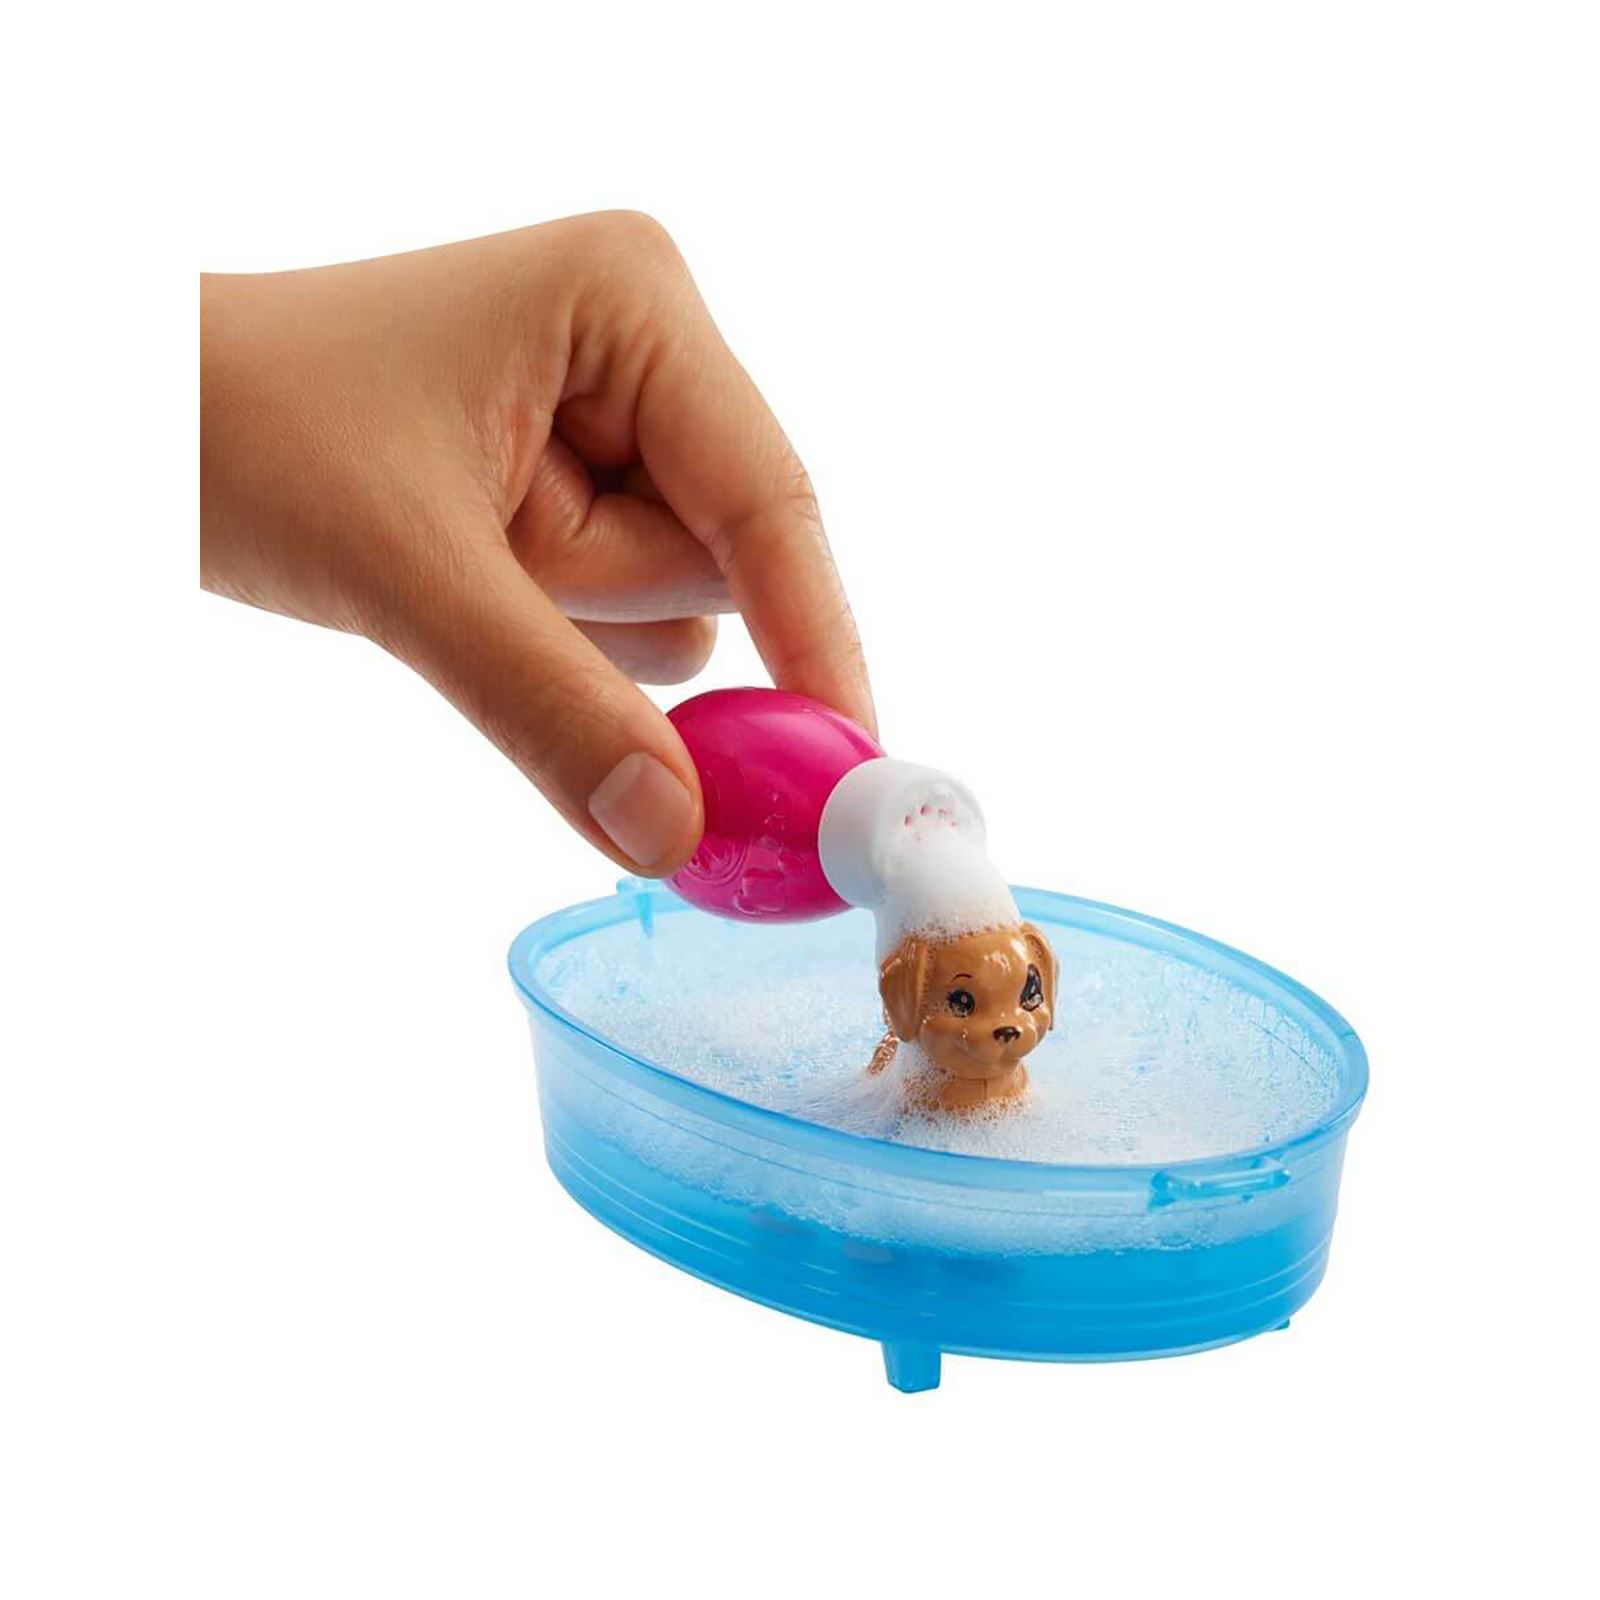 Barbie Ve Köpekleri Banyo Keyfinde Oyun Seti